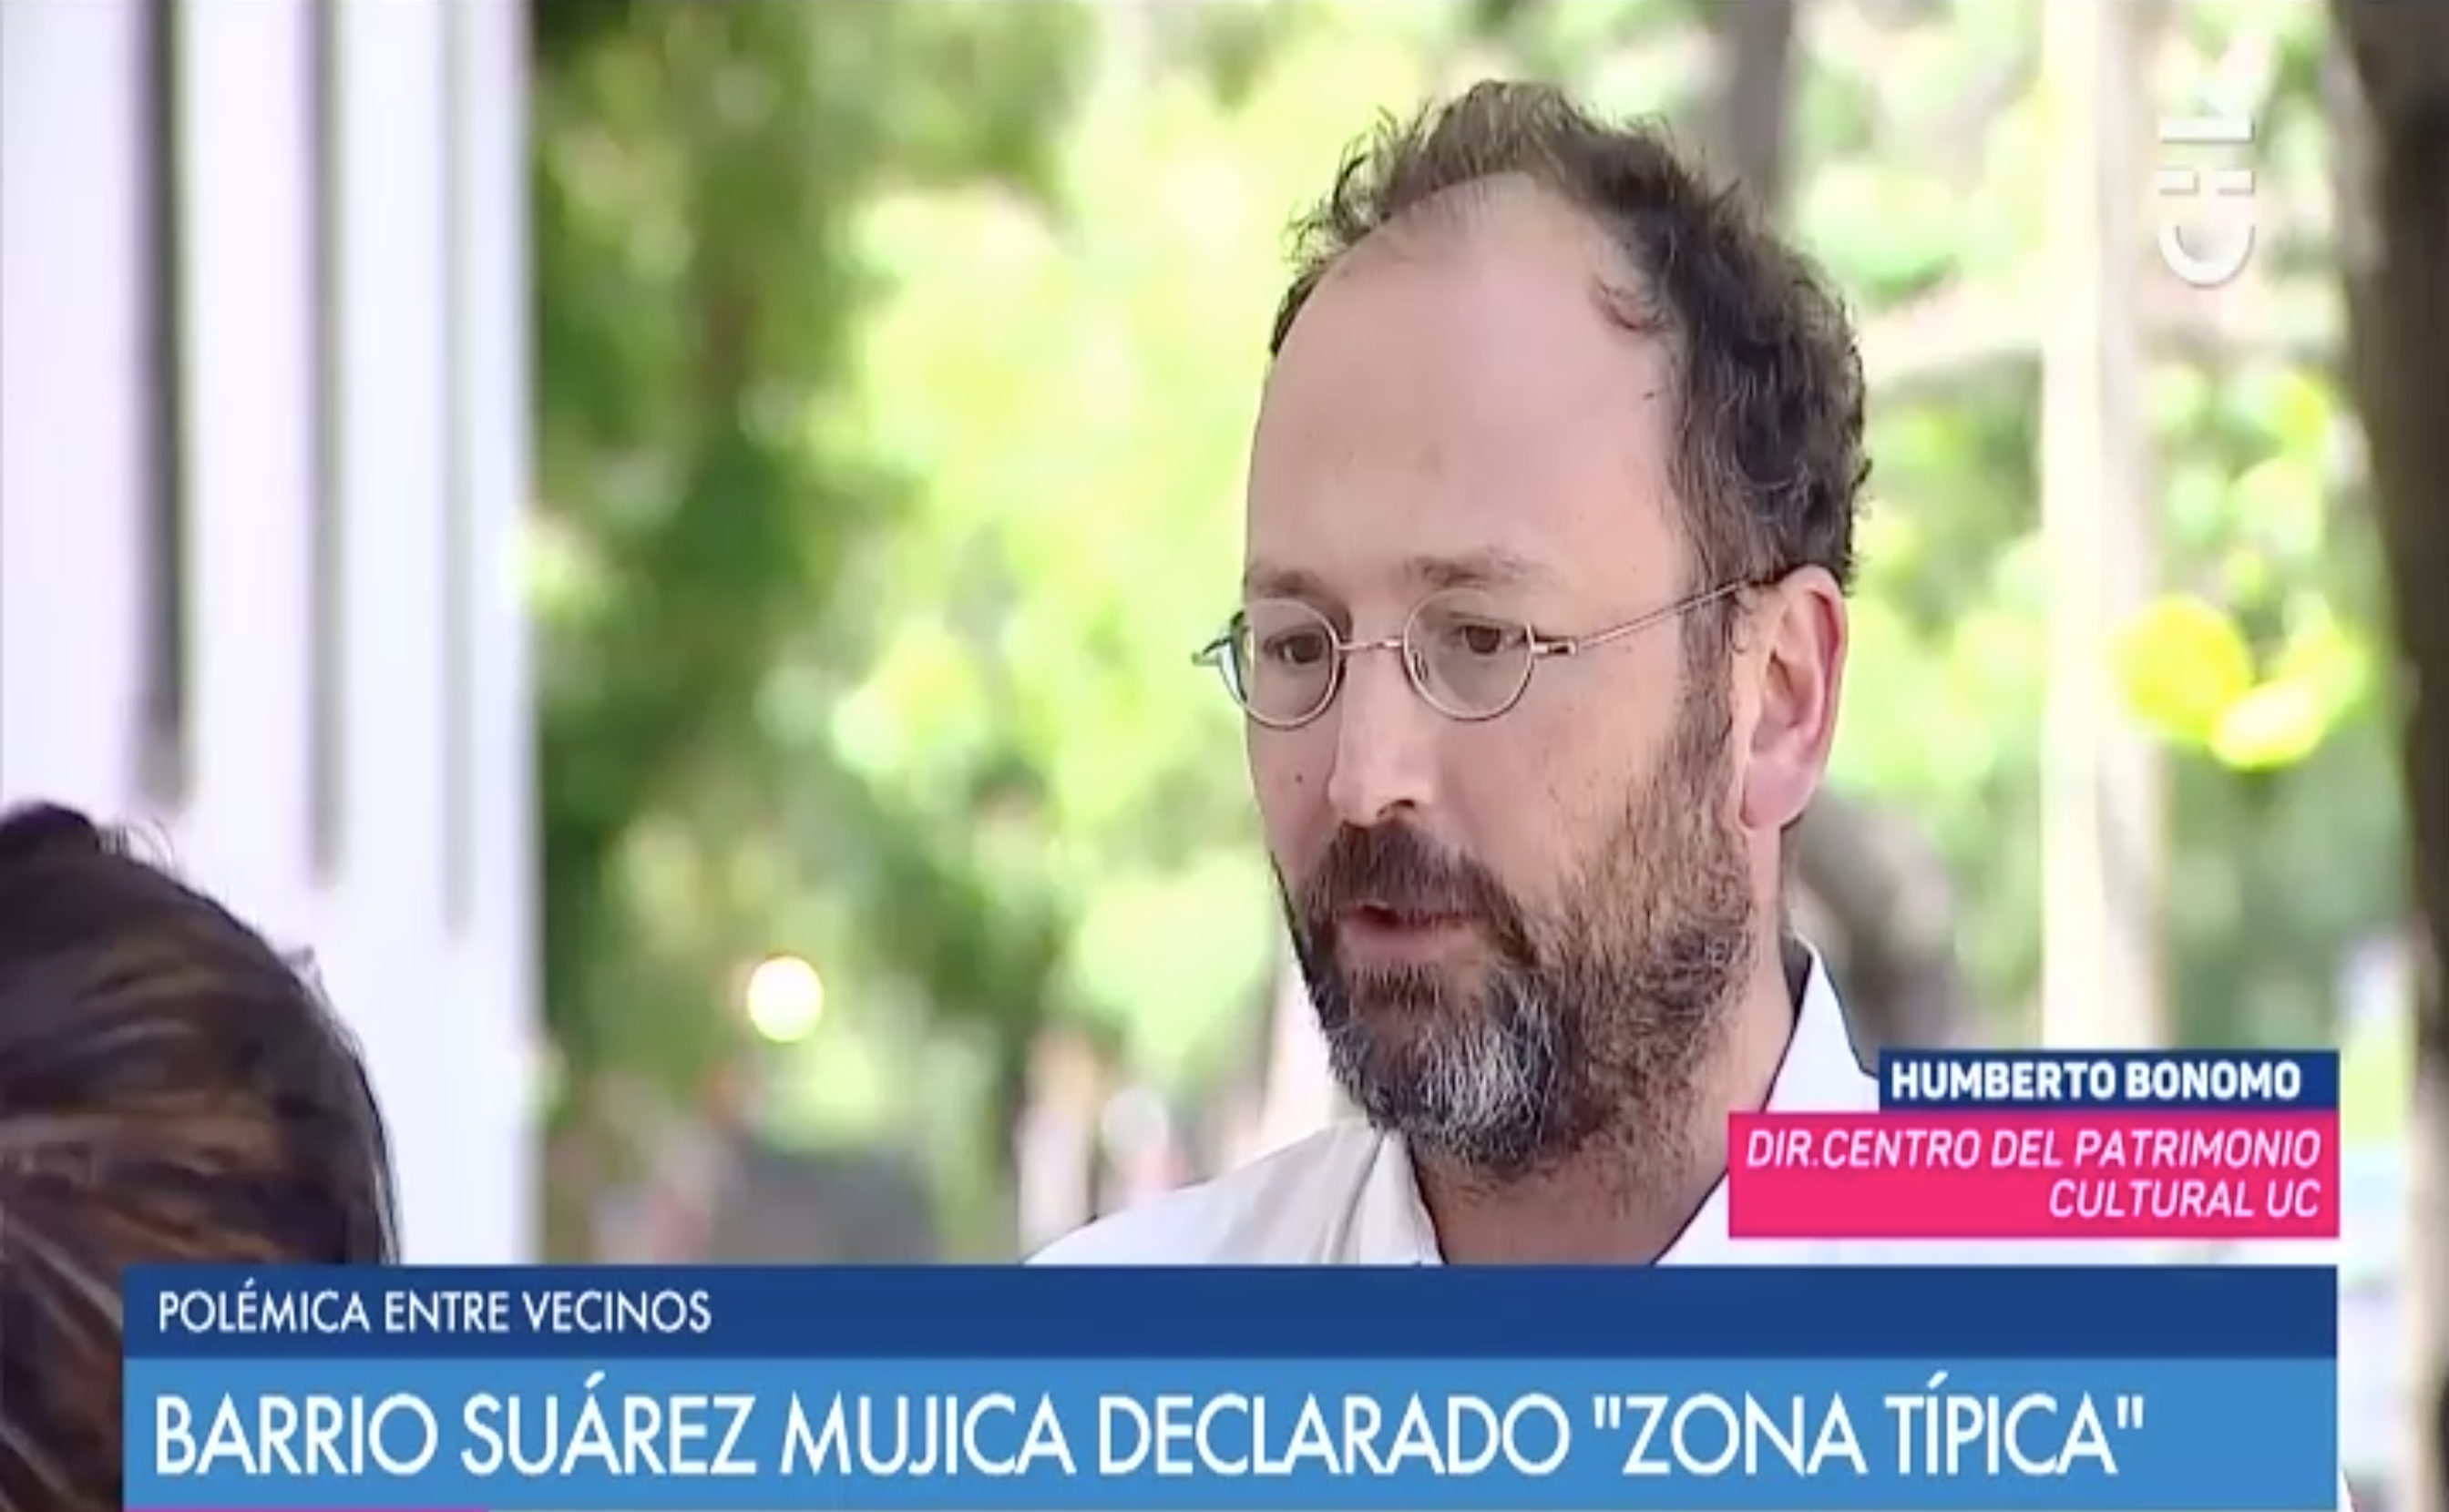 Umberto_Bonomo_entrevistado_por_declaracion_del_Barrio_Suarez_Mujica_como_Zona_Tipica.png